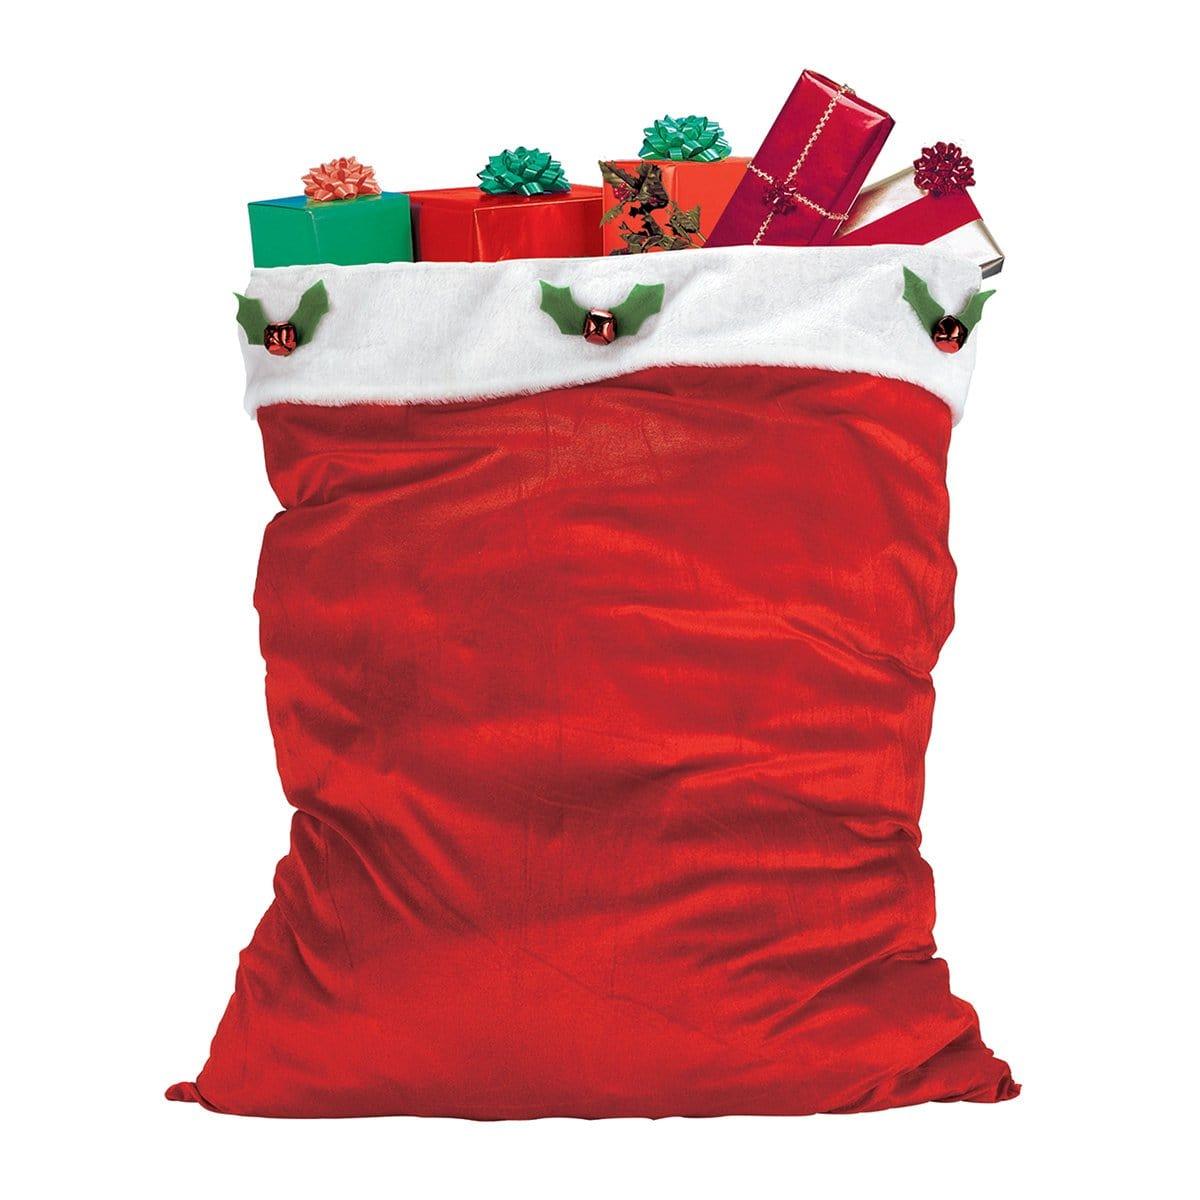 Buy Christmas Santa Bag sold at Party Expert